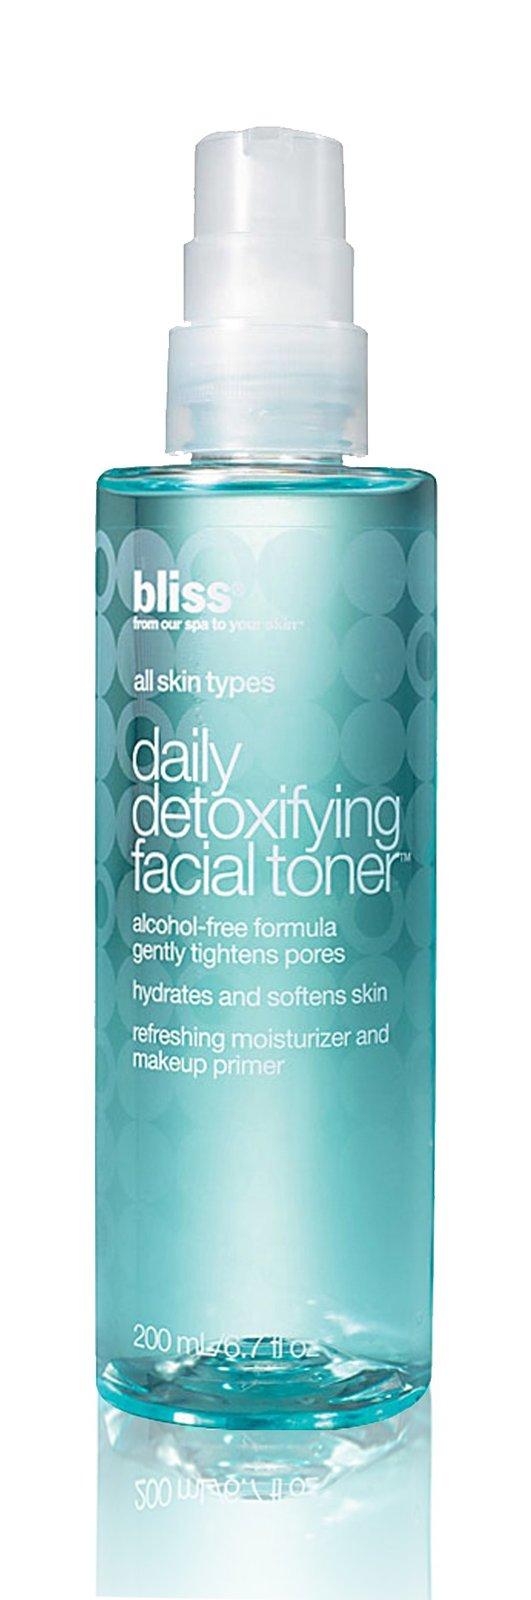 Bliss Daily Detoxifying Facial Toner- 6.7 Oz.